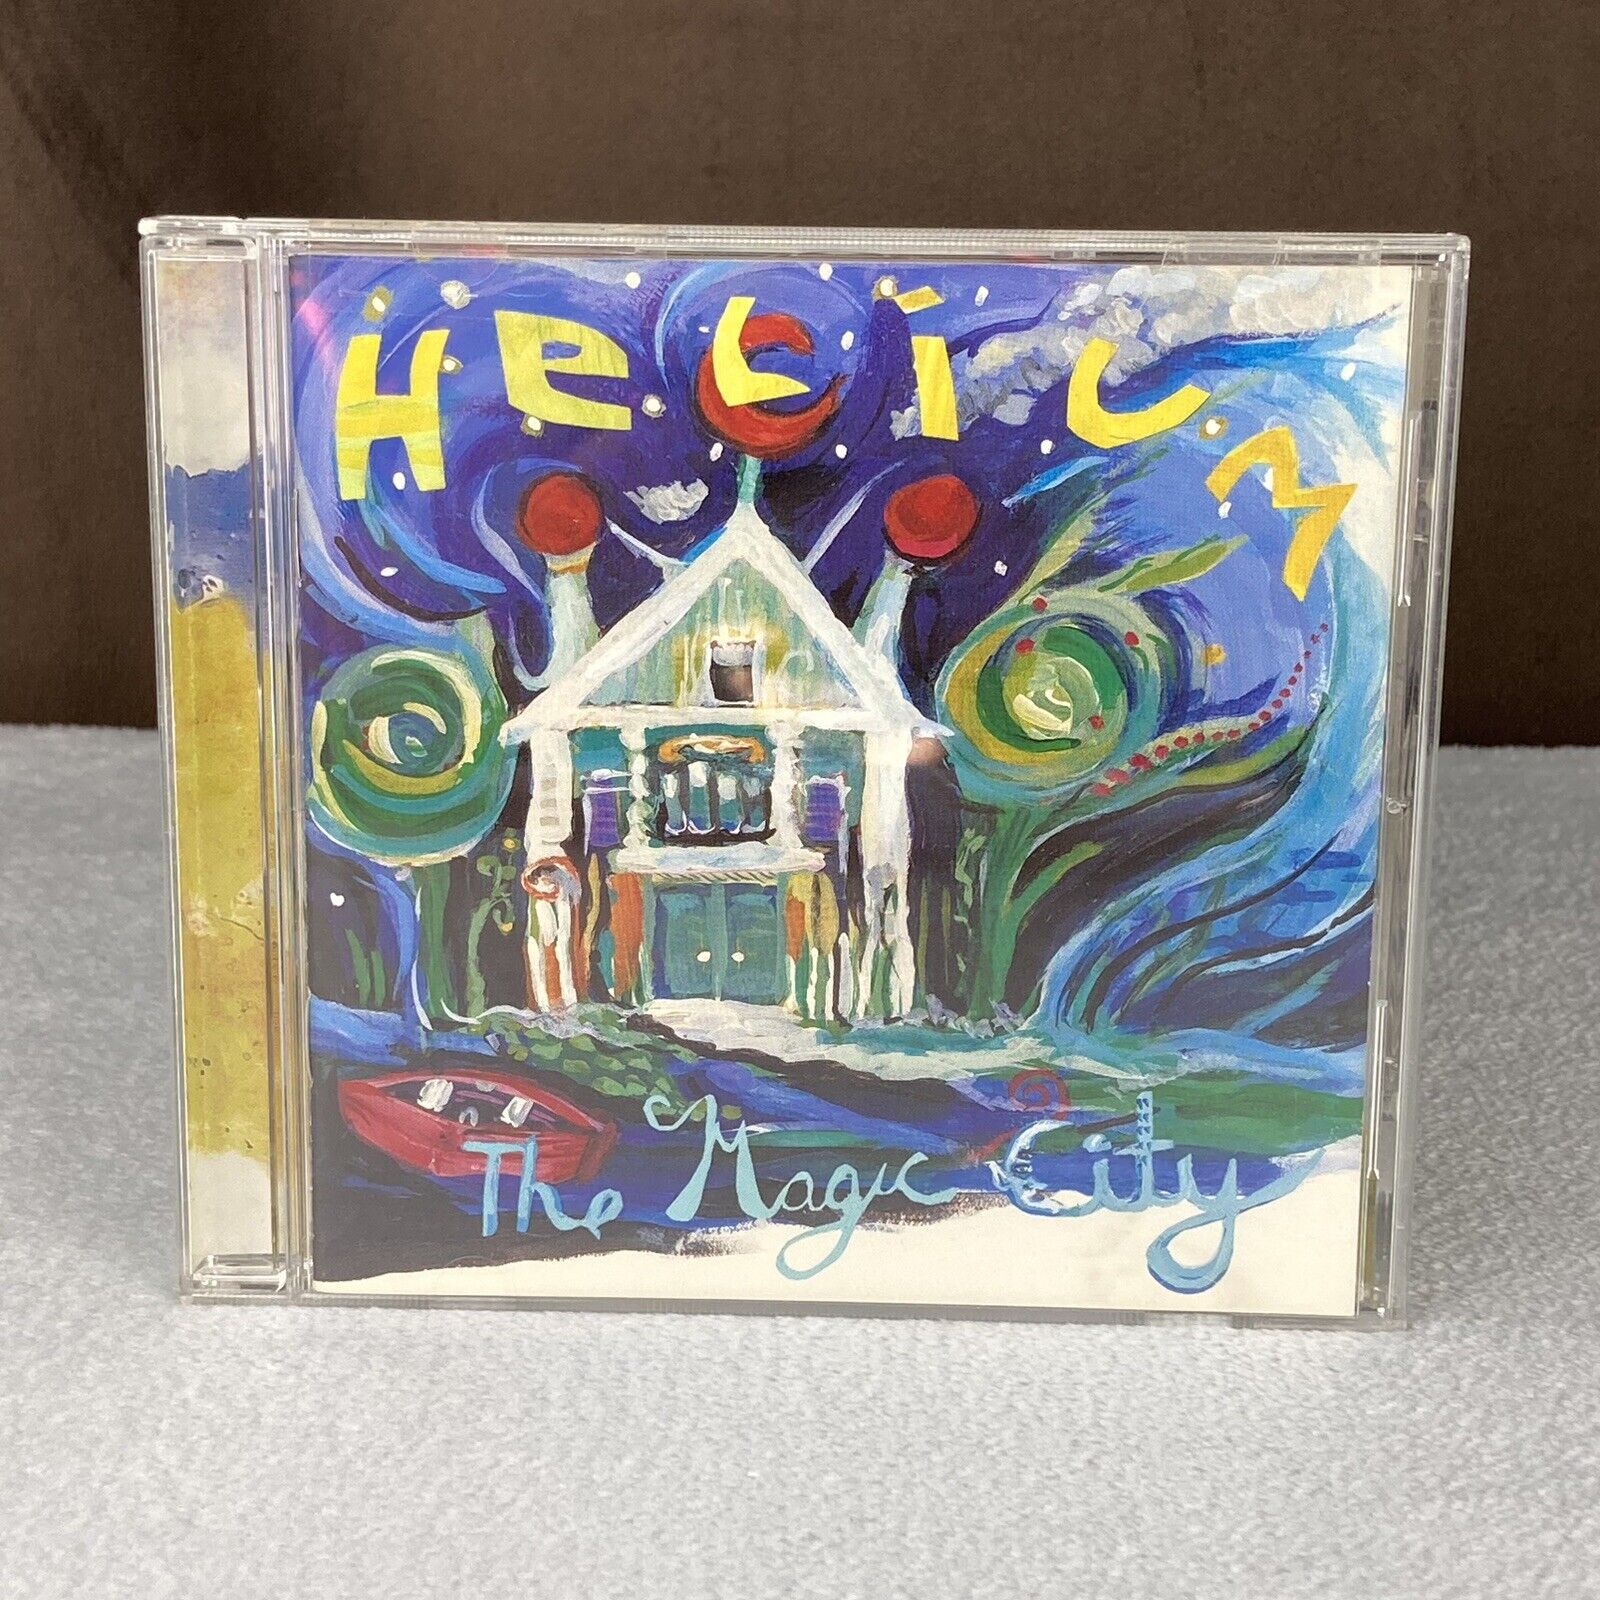 RARE Vtg 1997 Helium The Magic City CD Mary Timony Matador Records Ole 195-2